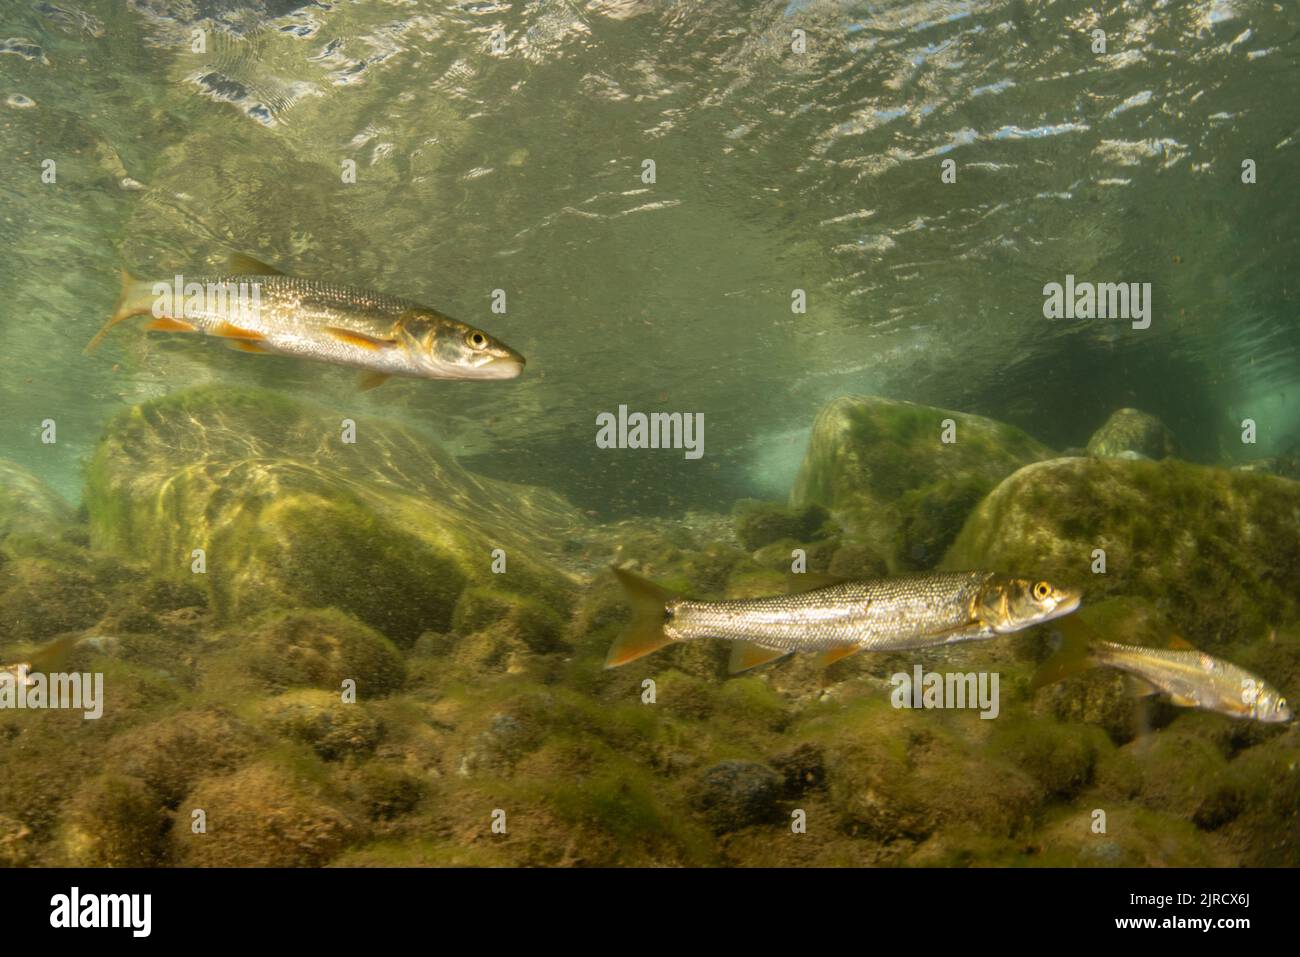 Sacramento pikeminnow (Ptychocheilus grandis), un poisson d'eau douce d'une rivière dans les montagnes de la Sierra Nevada en Californie, États-Unis. Banque D'Images